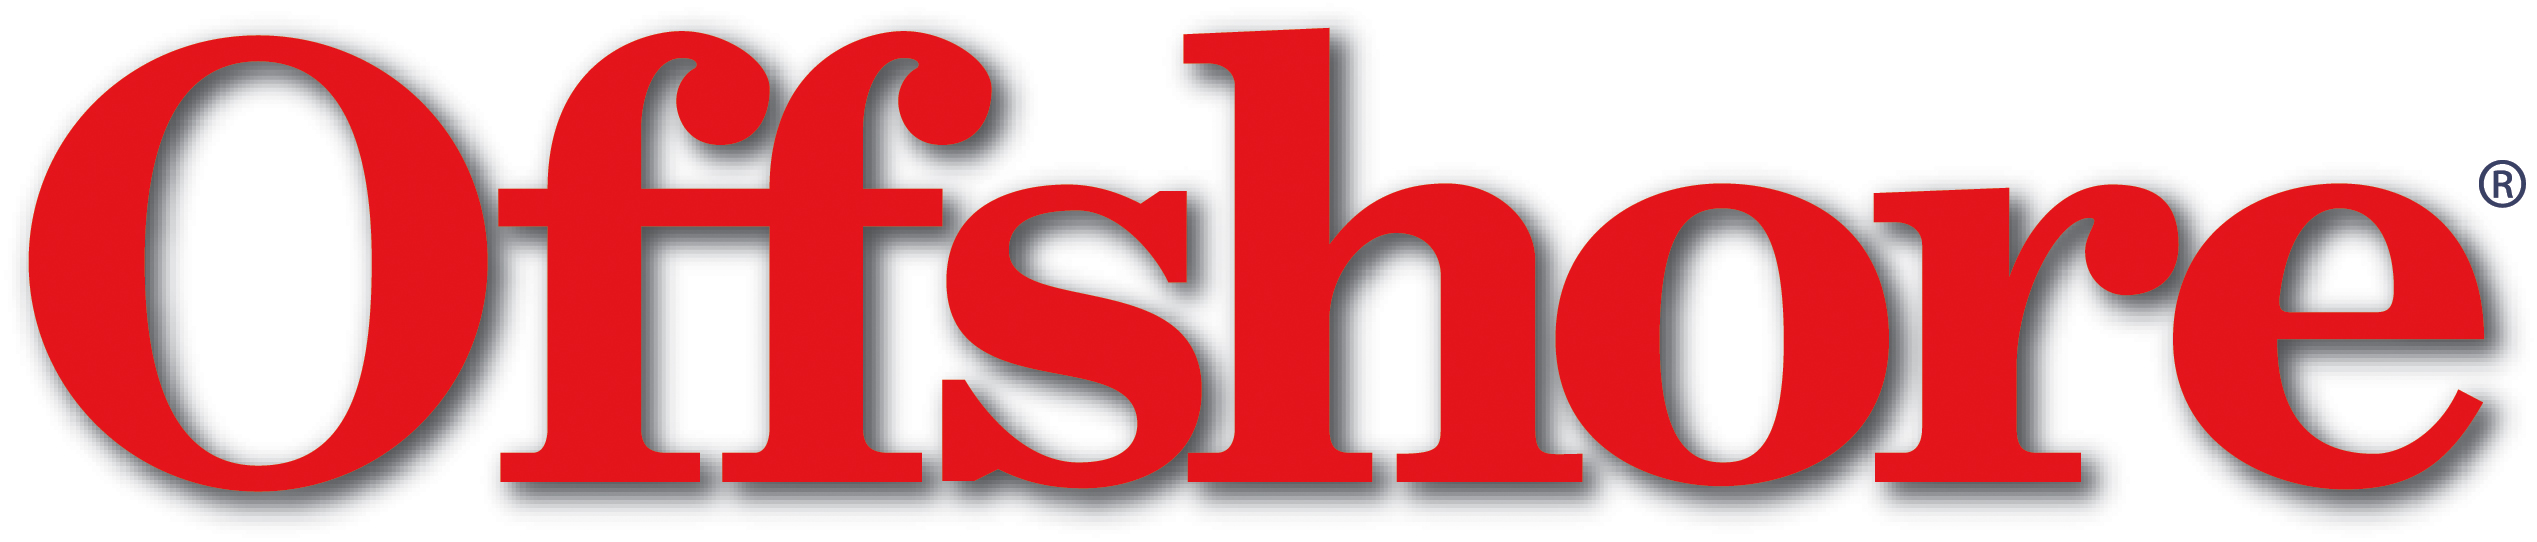 Offshore - Logo  2537x542.jpg